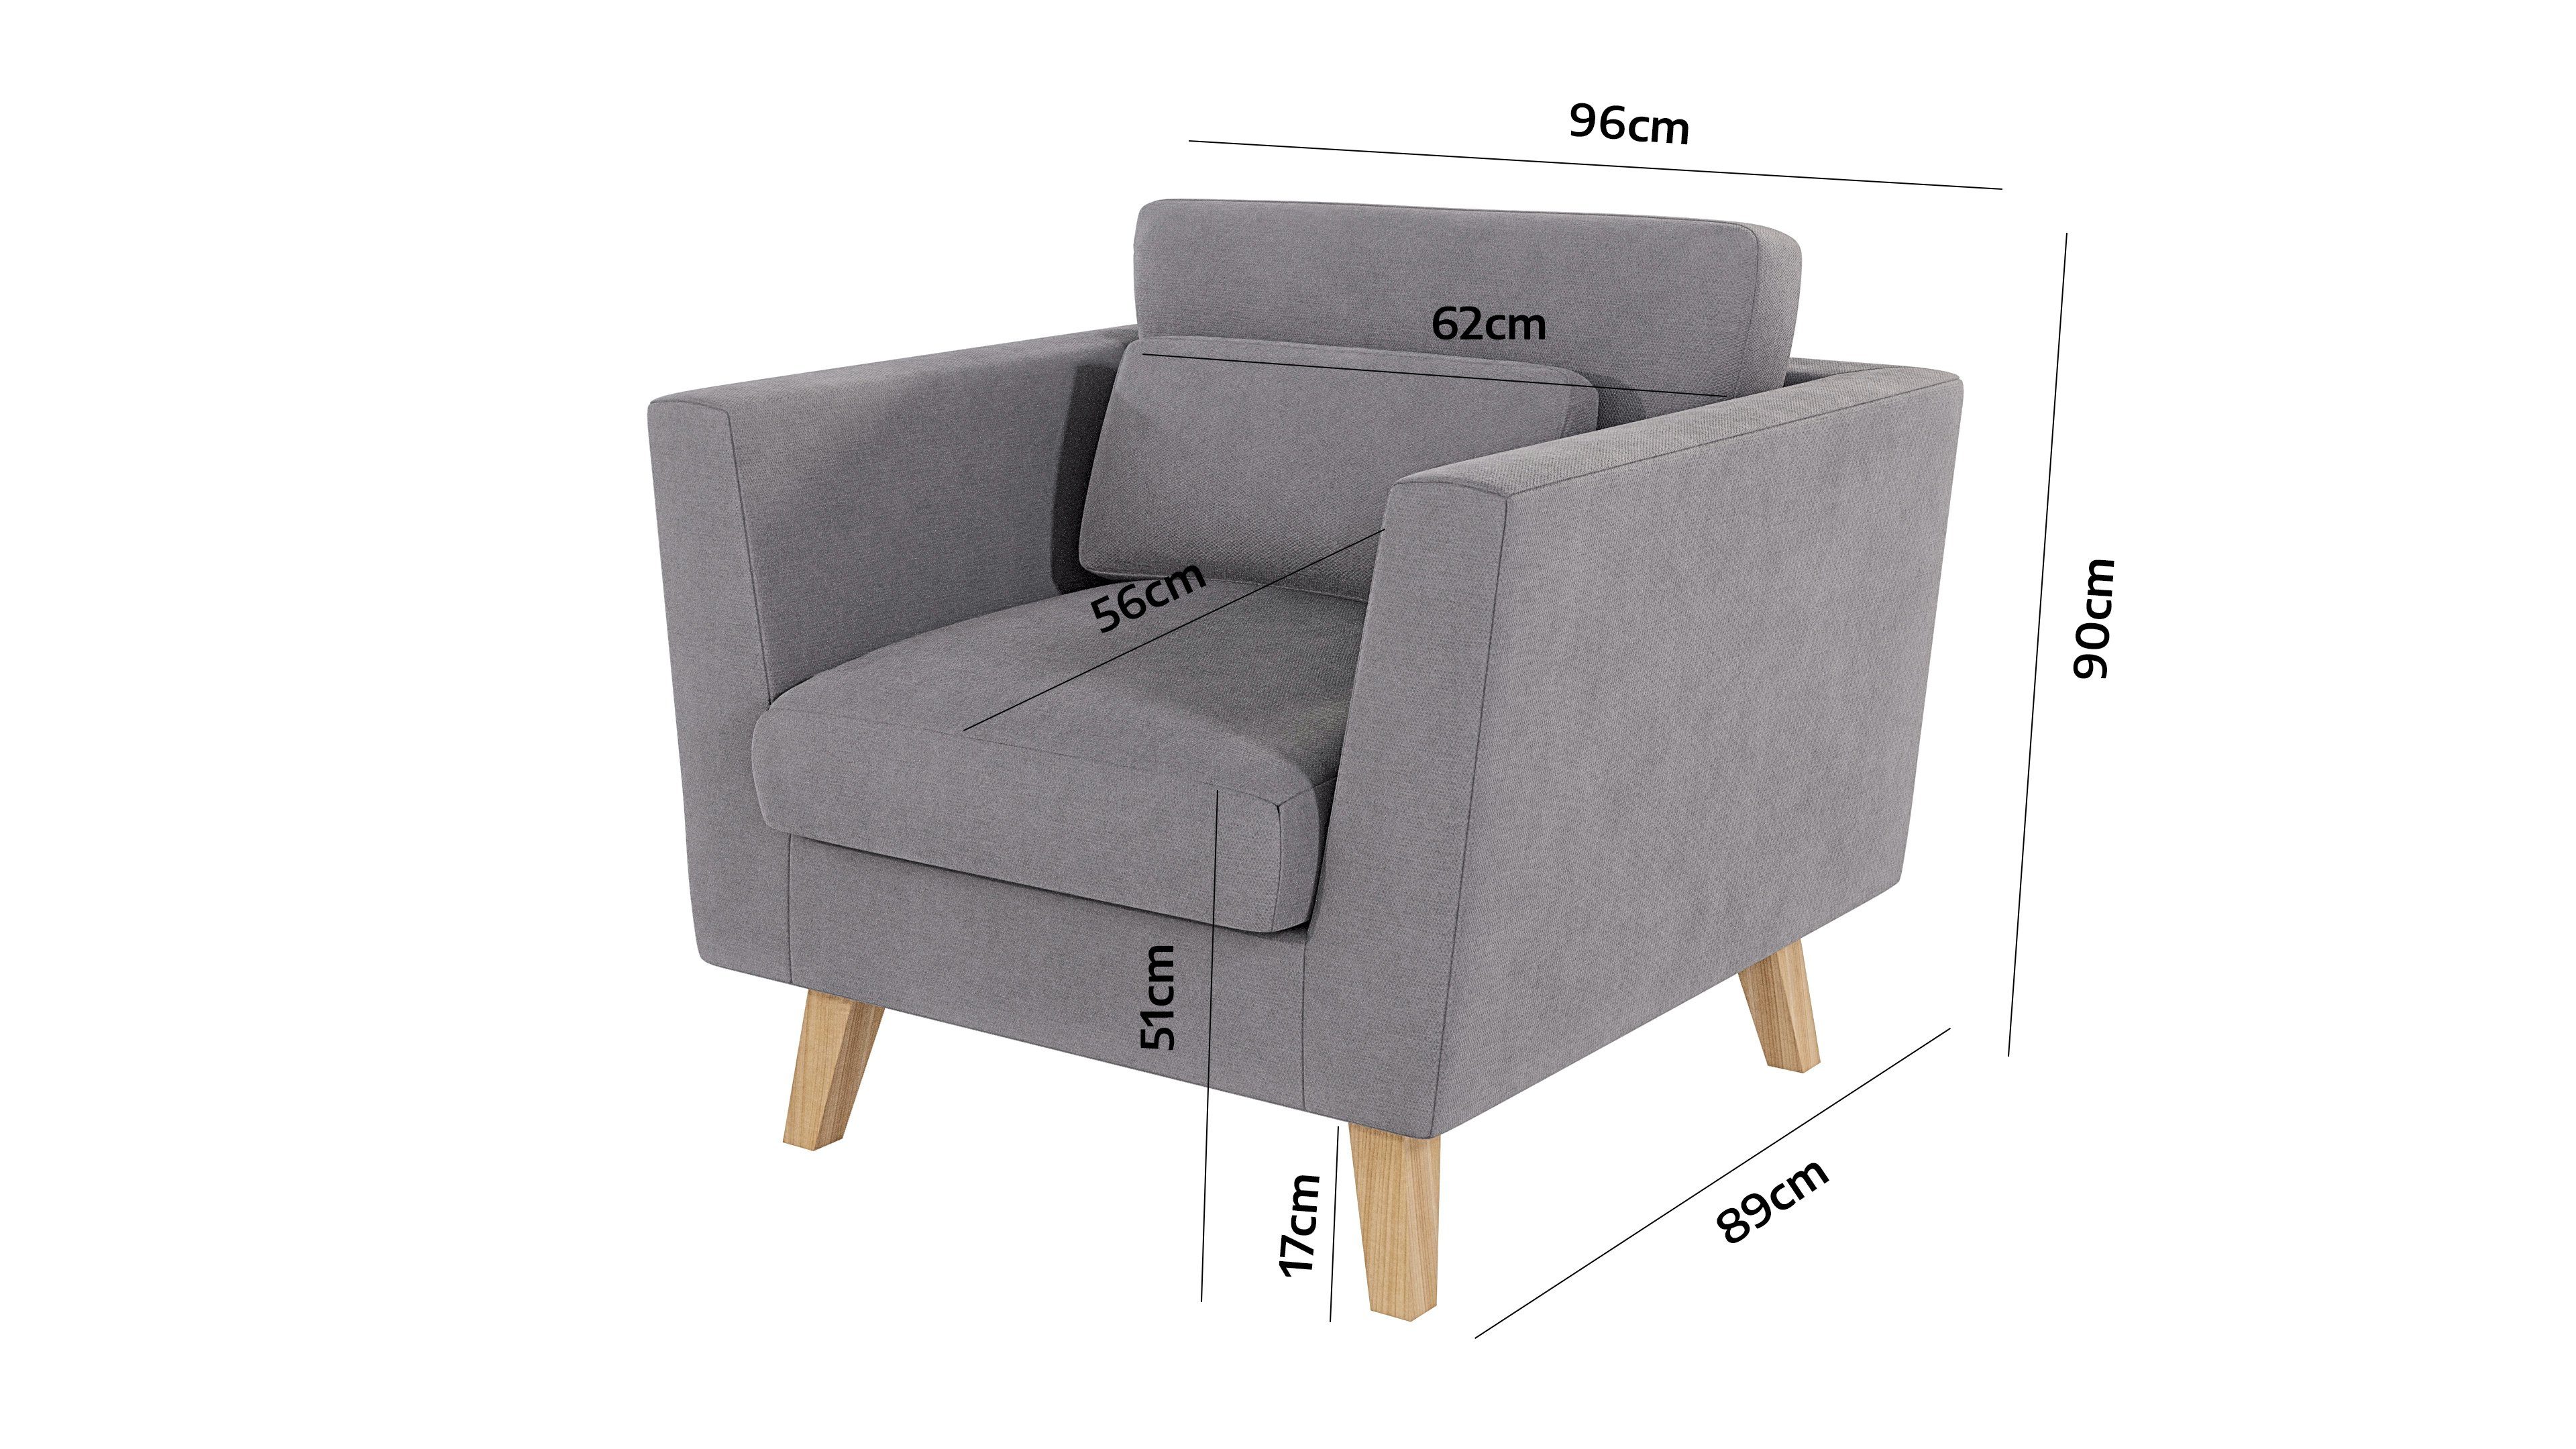 Dunkelbeige Möbel Sessel S-Style mit Wellenfederung Design, im skandinavischen Angeles